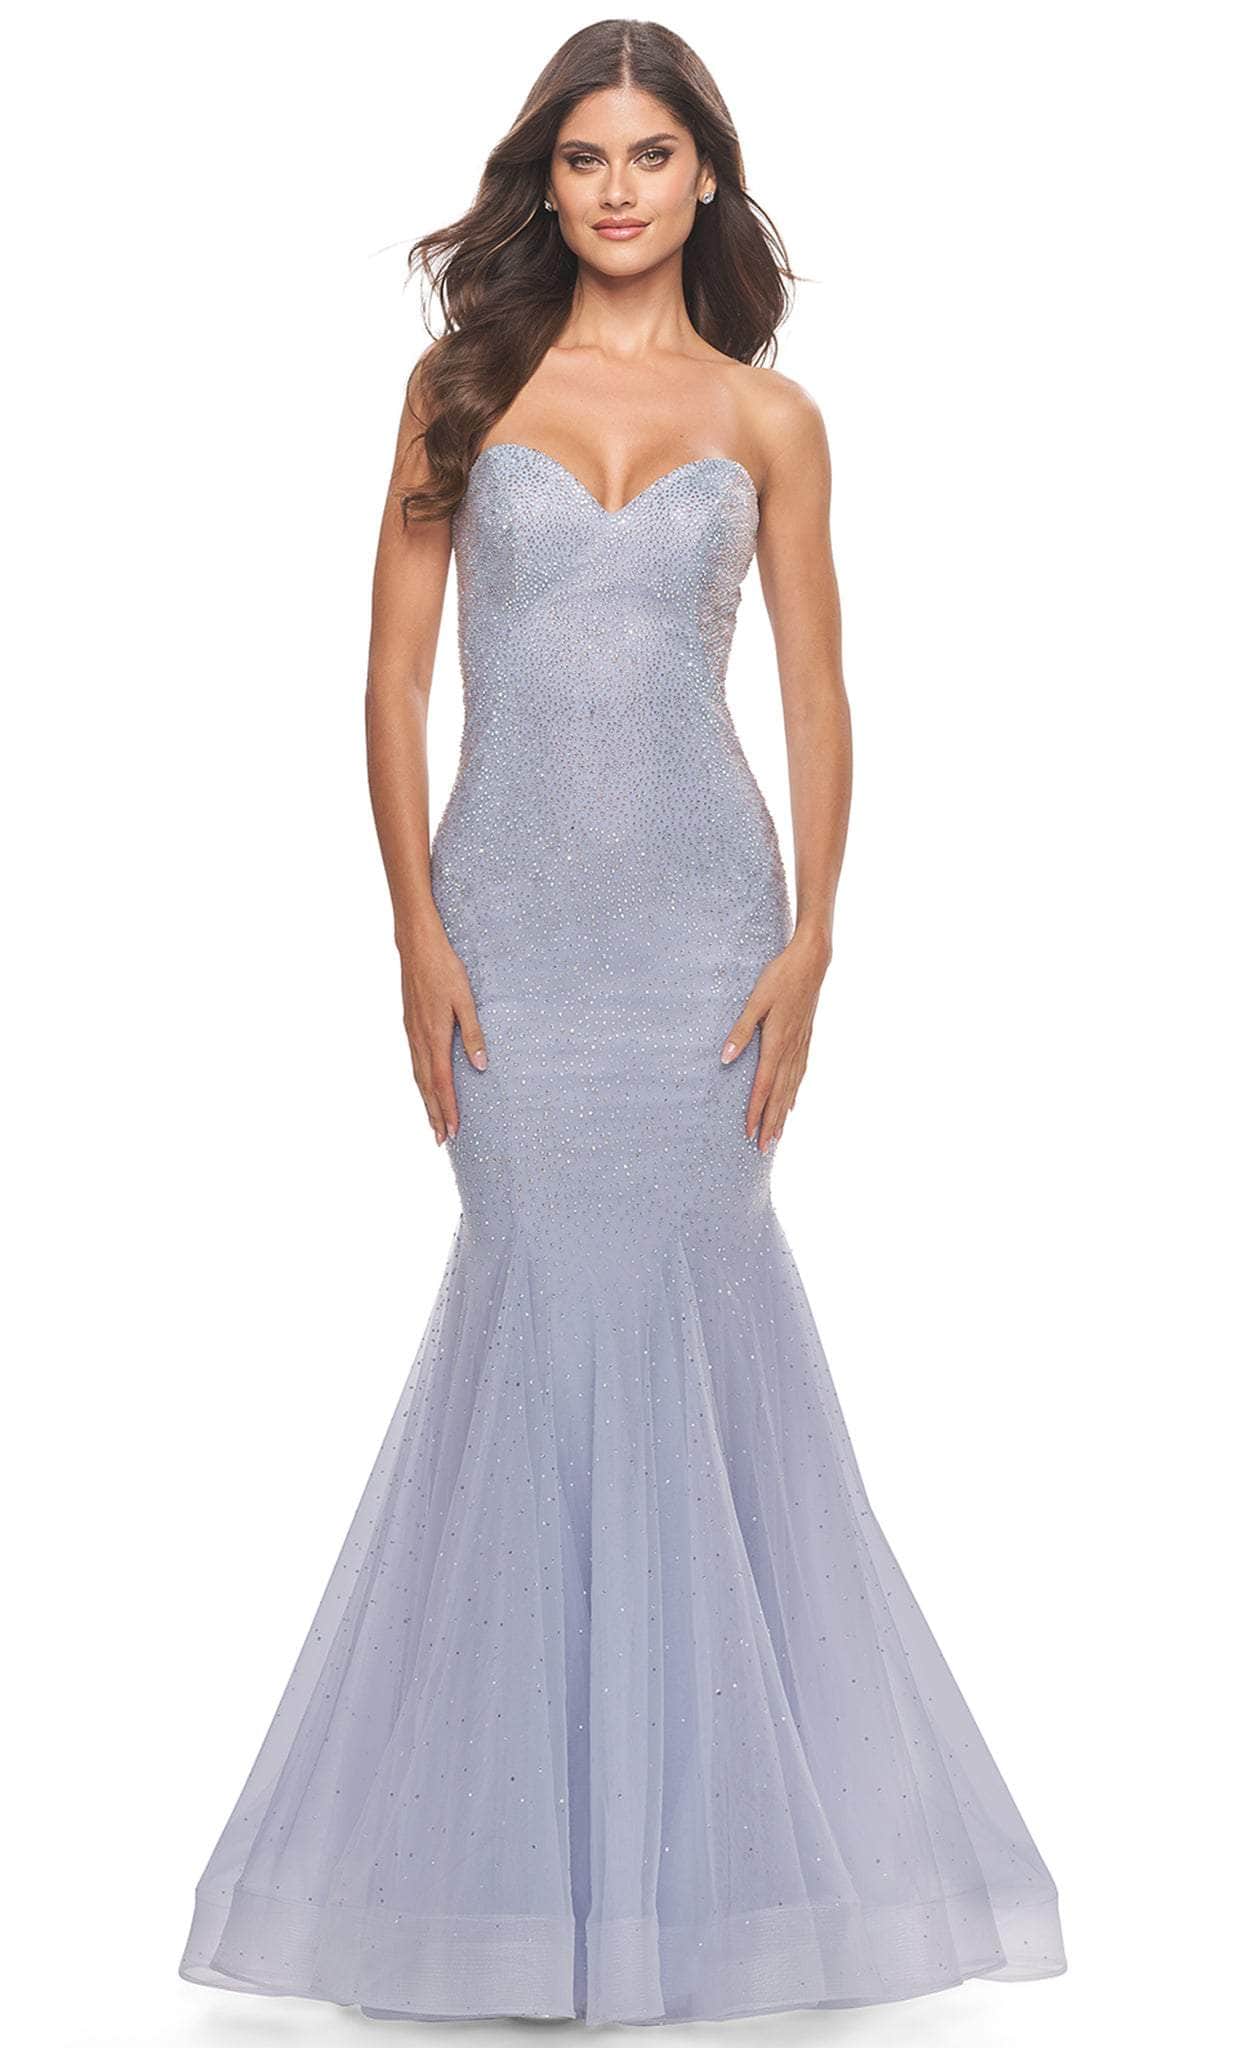 Image of La Femme 31421 - Beaded Tulle Mermaid Prom Dress